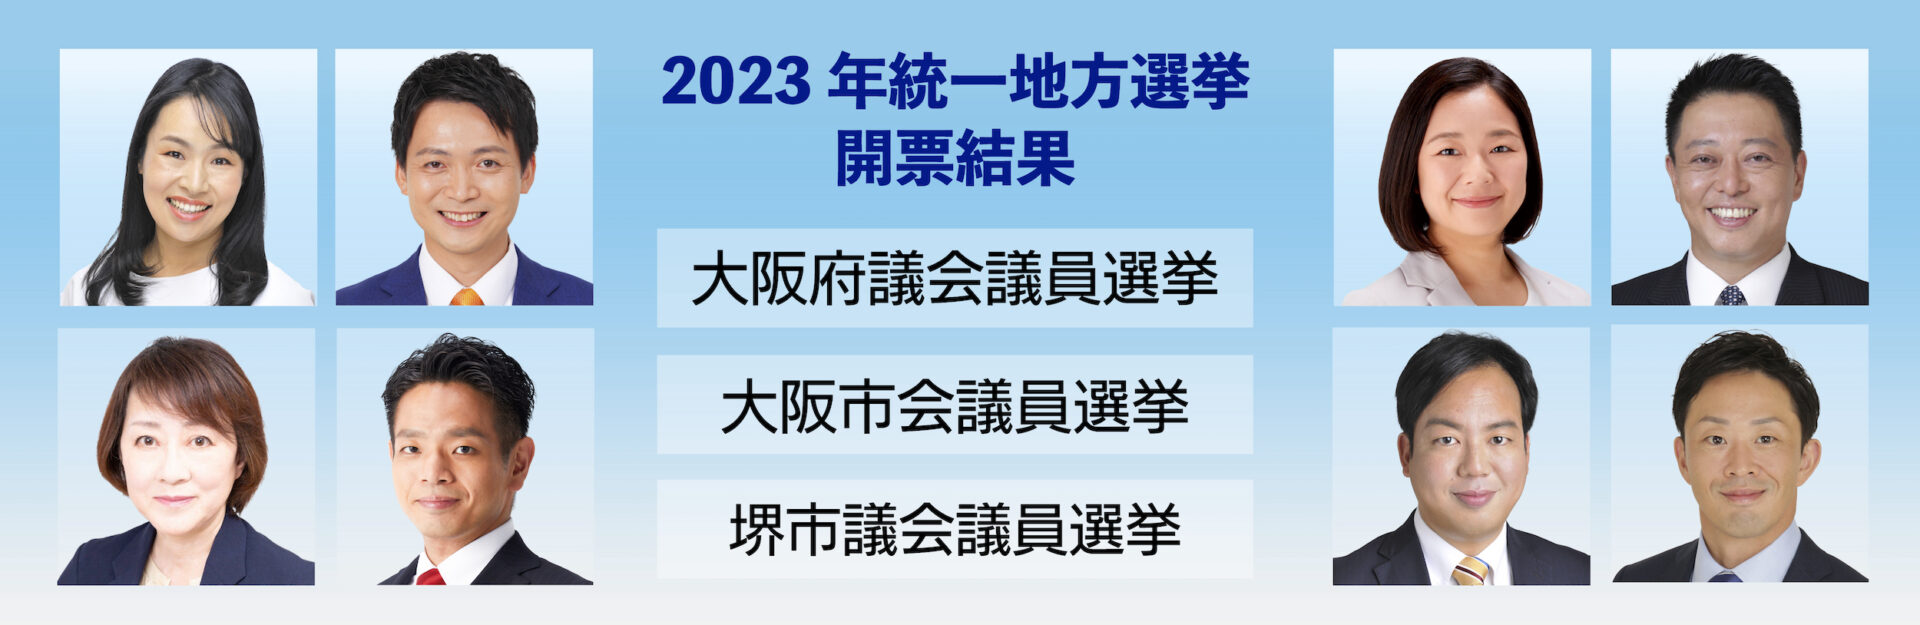 統一地方選挙2023 大阪府議会 ・大阪市会・ 堺市議会 開票結果を受けて